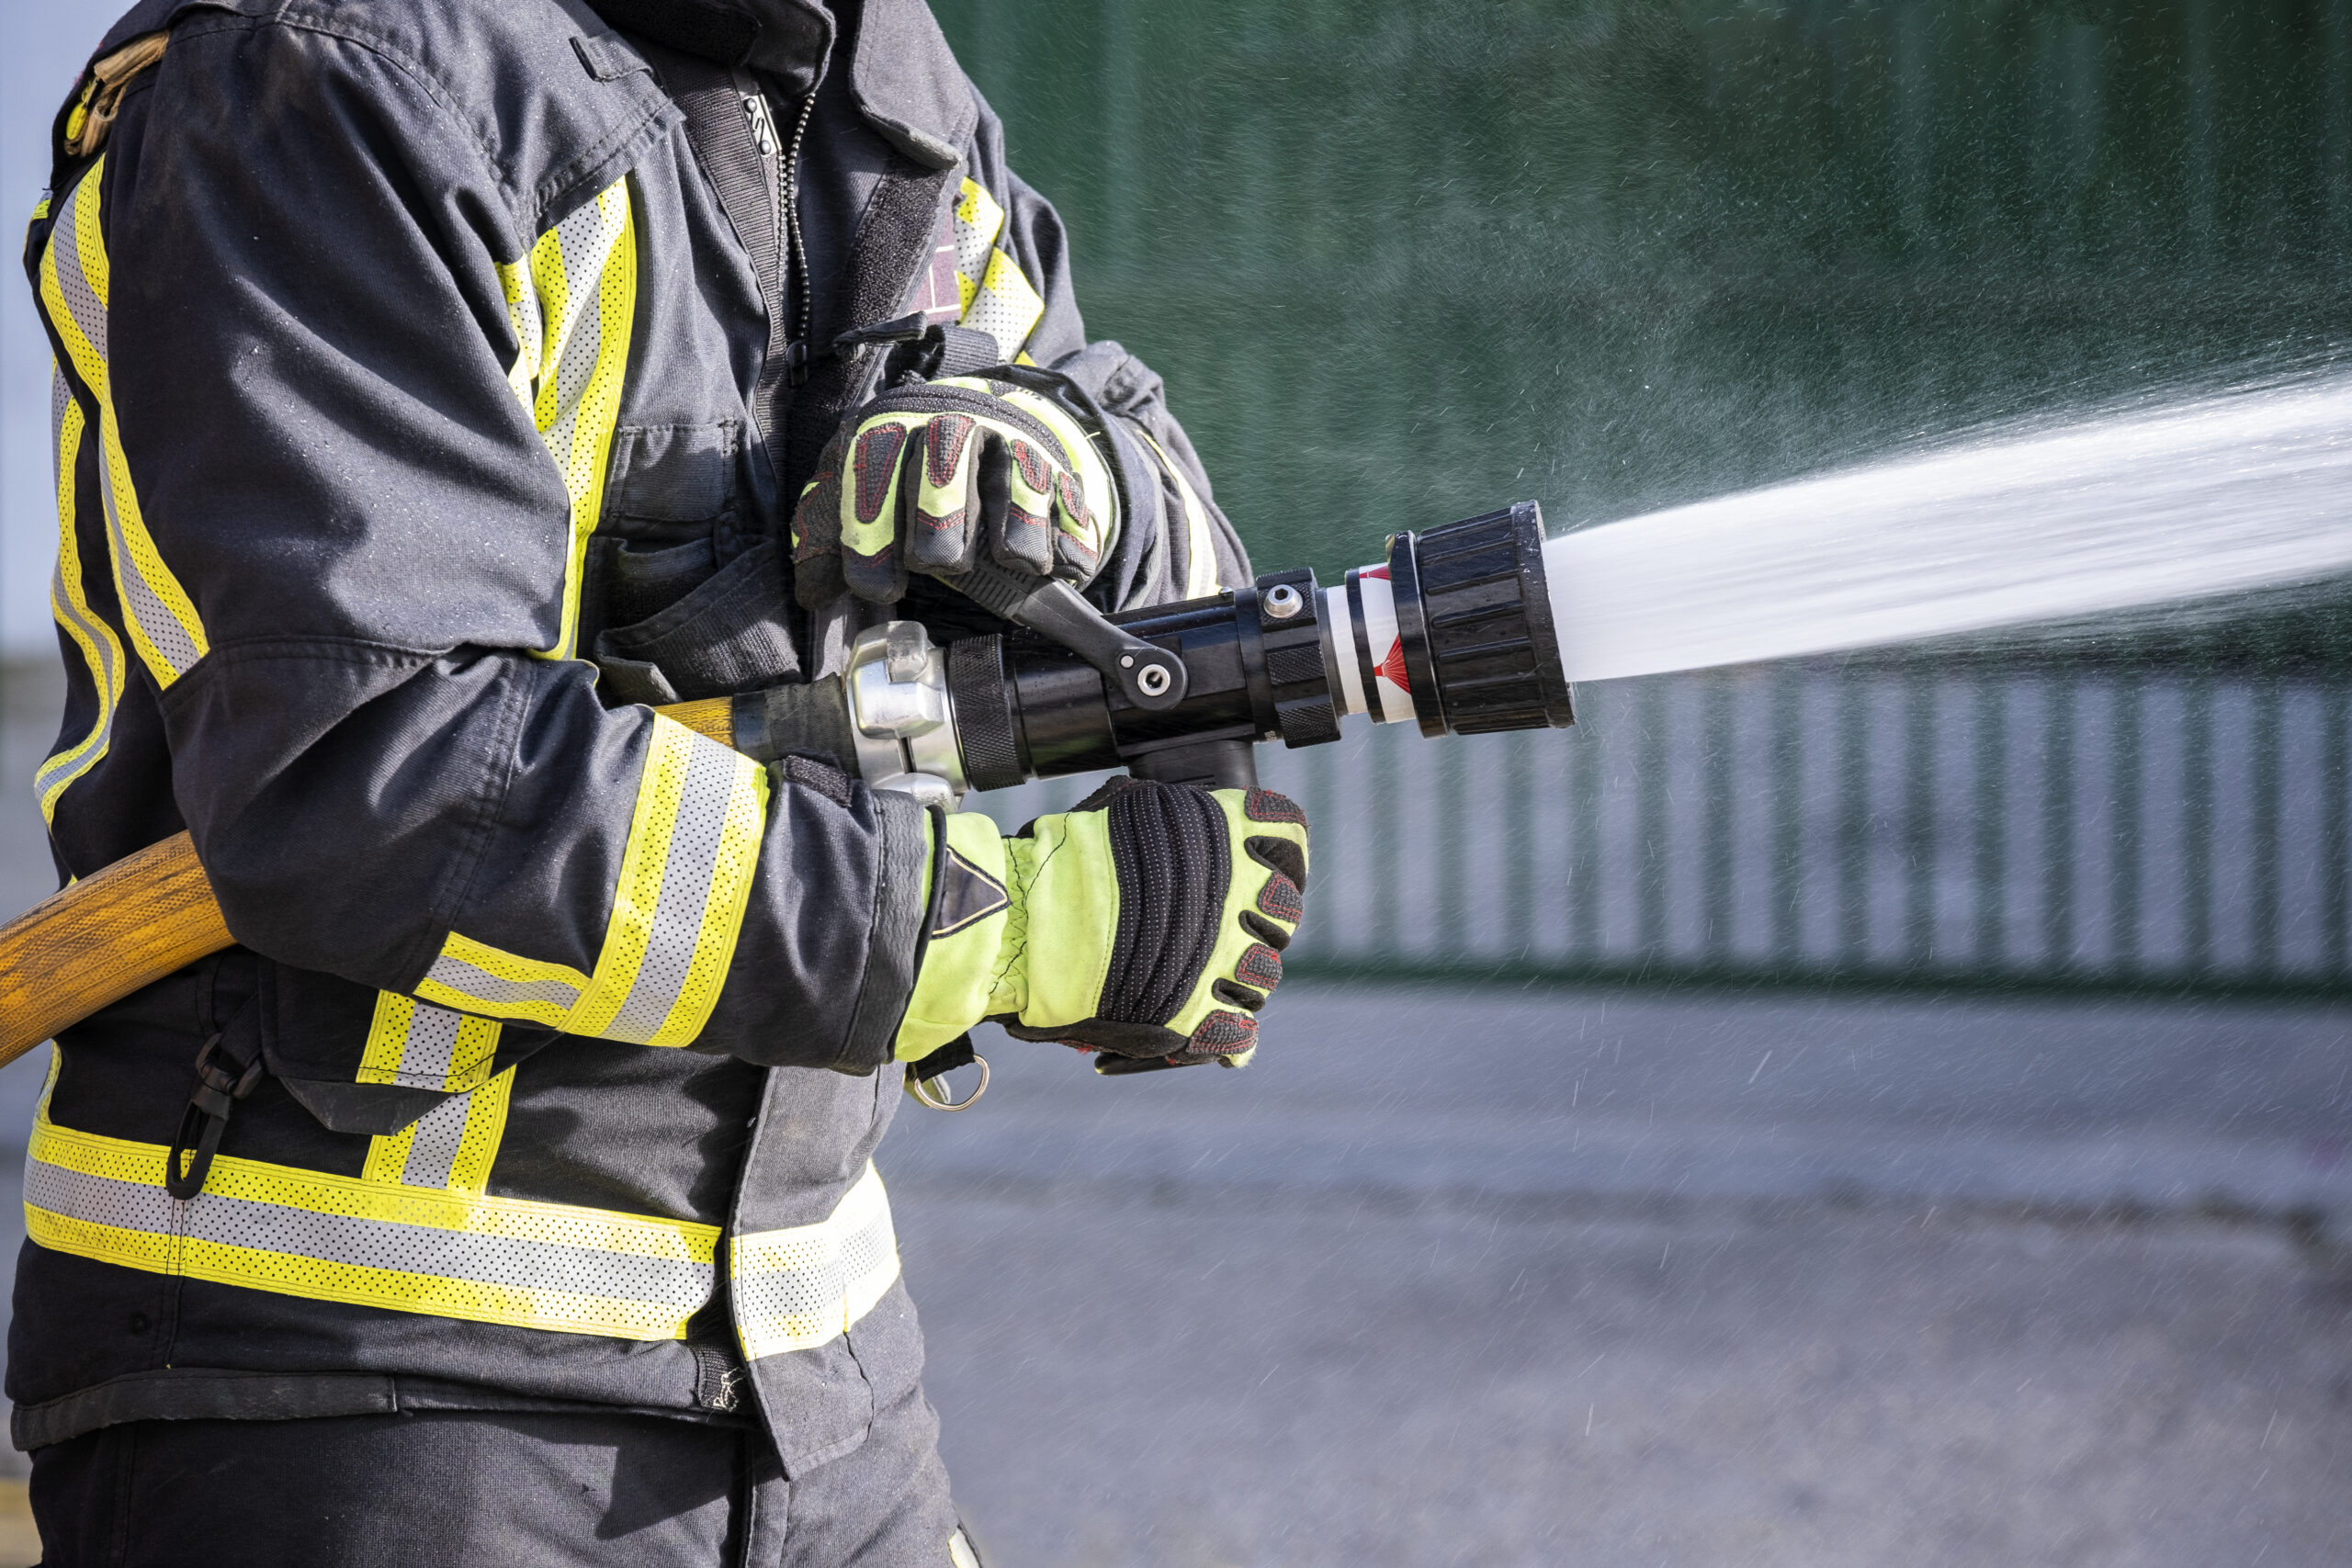 Strażak podczas akcji, który z determinacją gasi pożar, trzymając w rękach węża z wodą